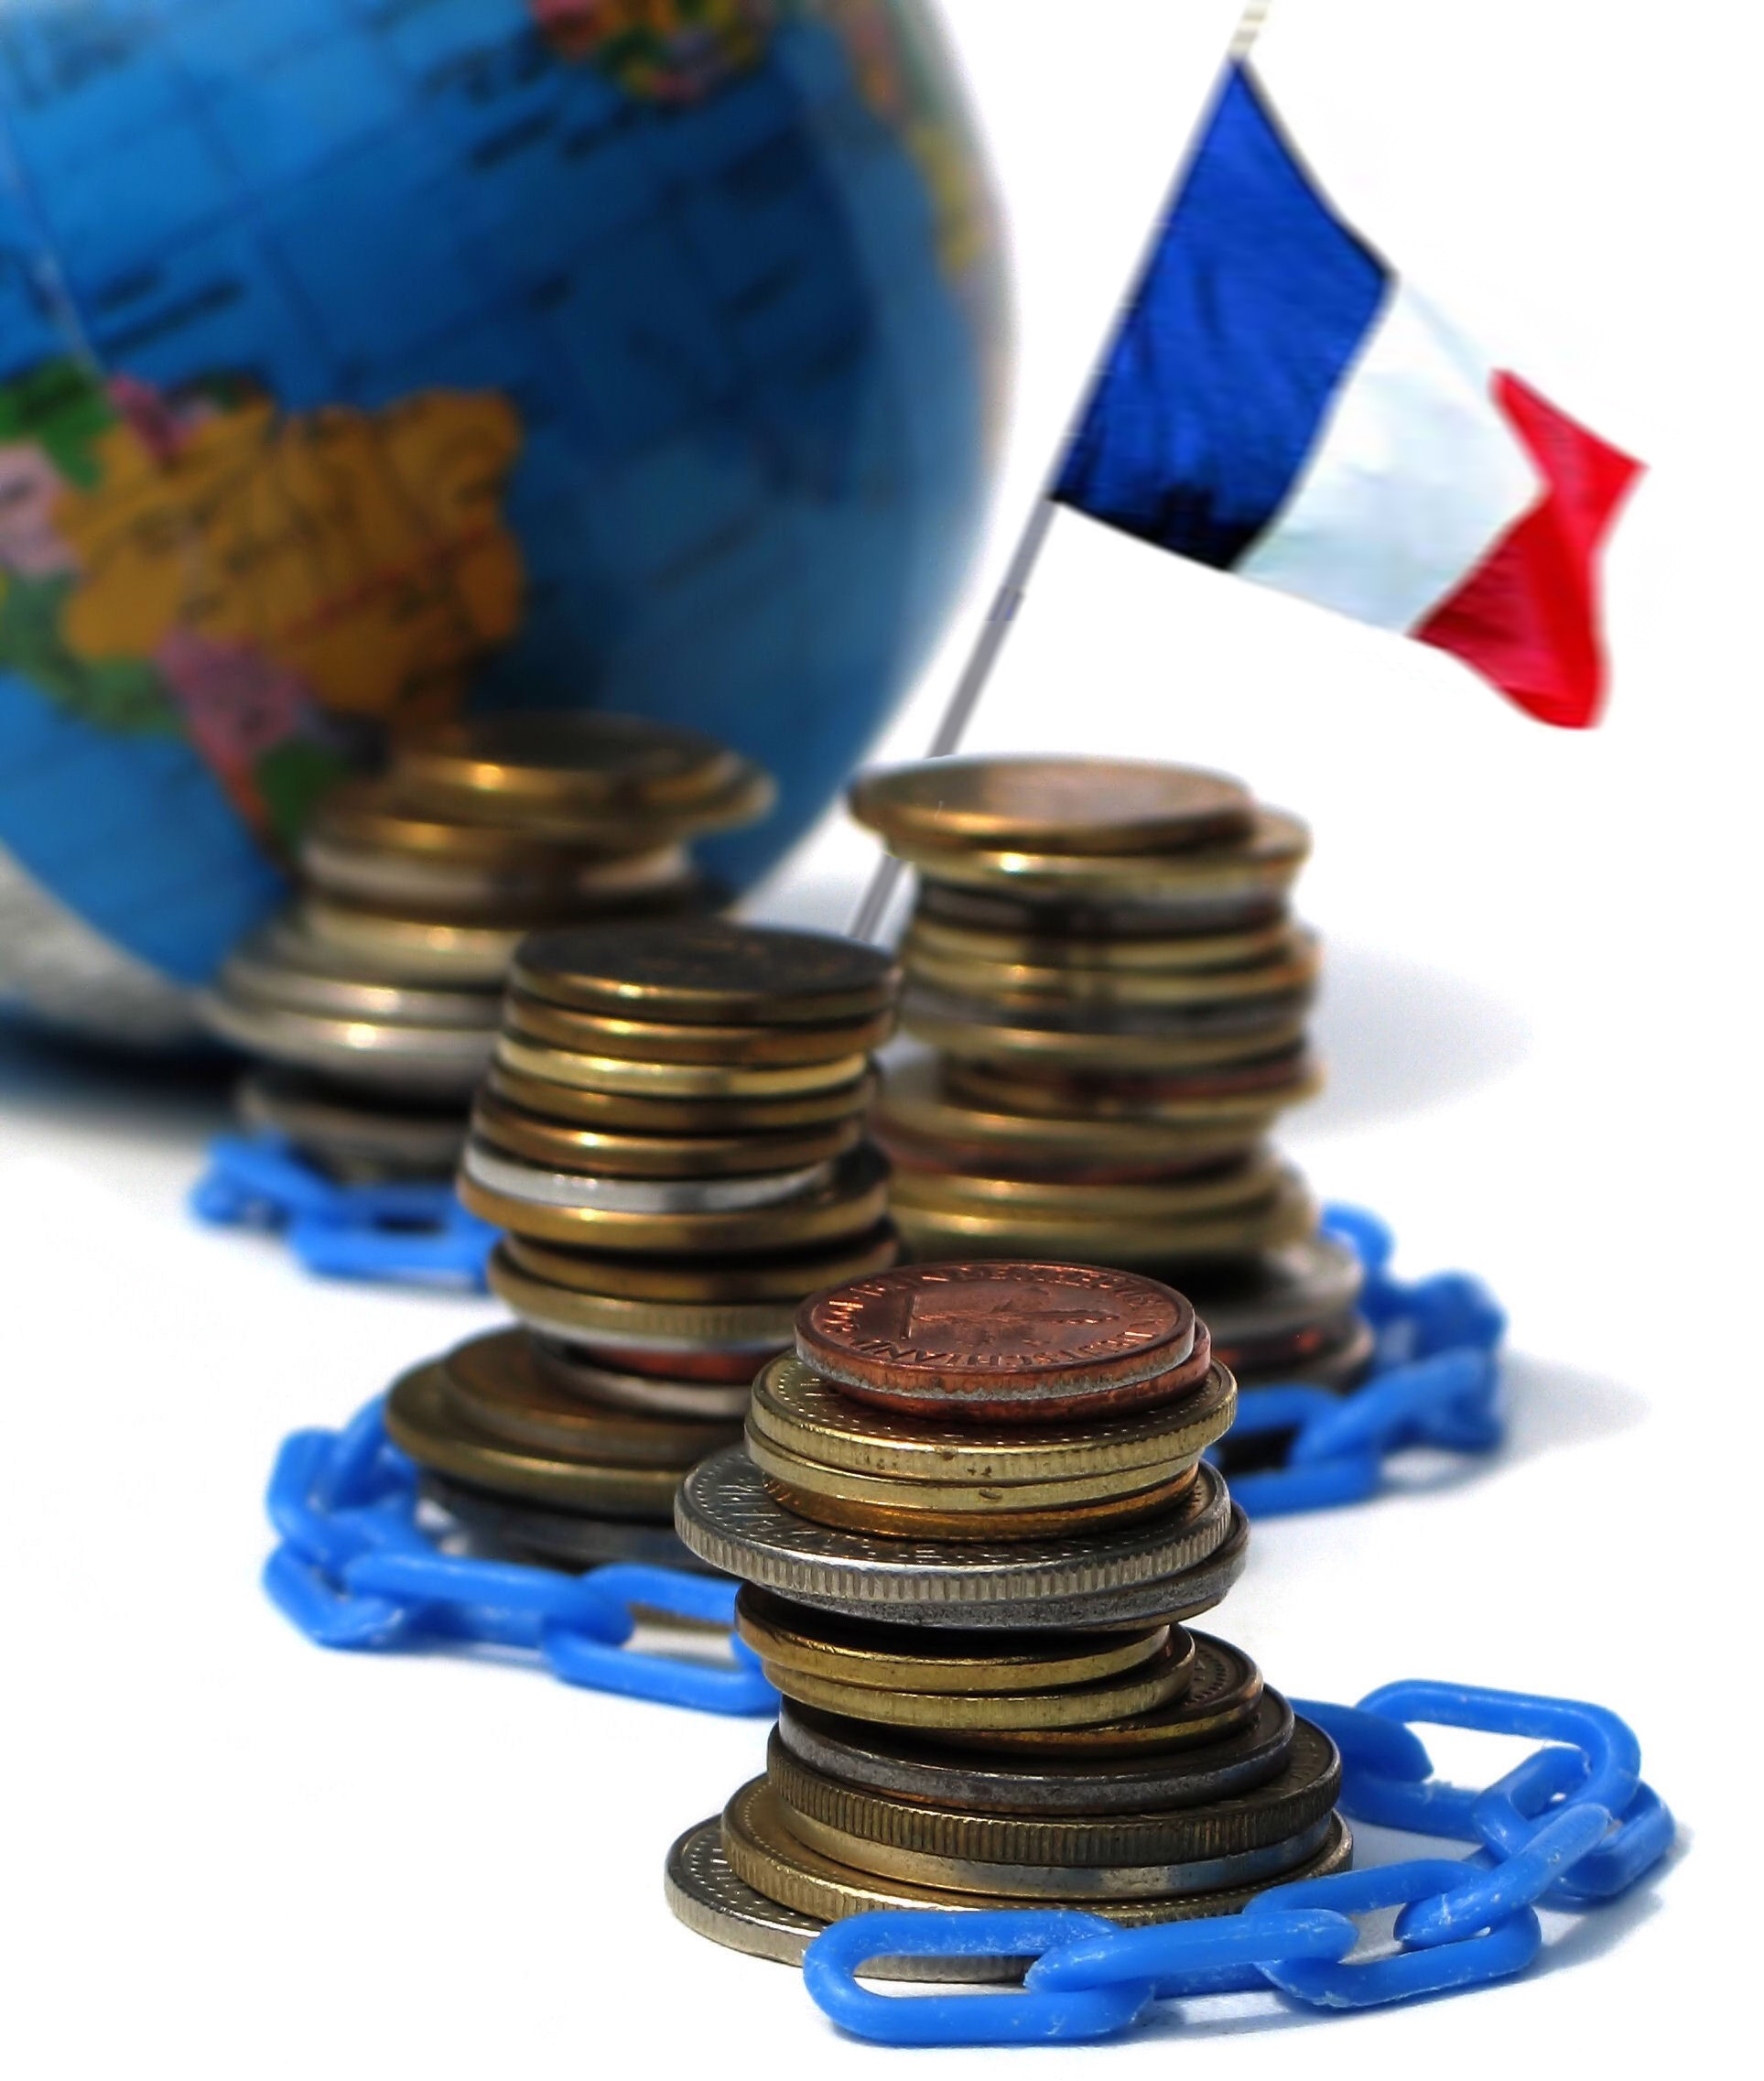 France: L’activité économique progresse, mais des réformes s’imposent